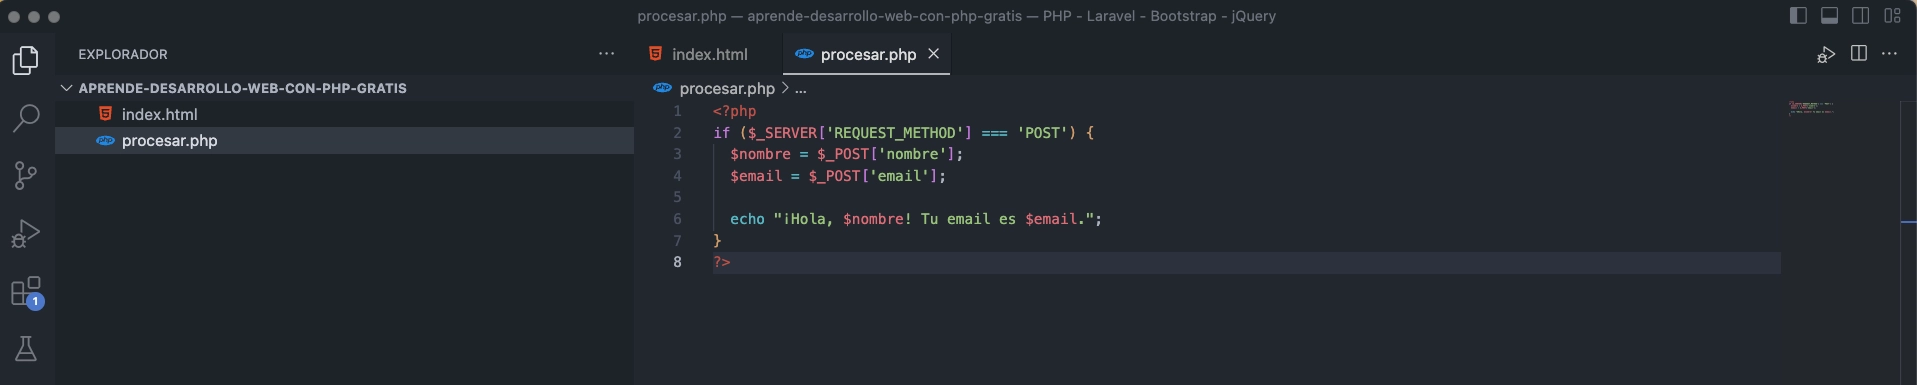 Recopilación y envío de datos de formularios en PHP Código